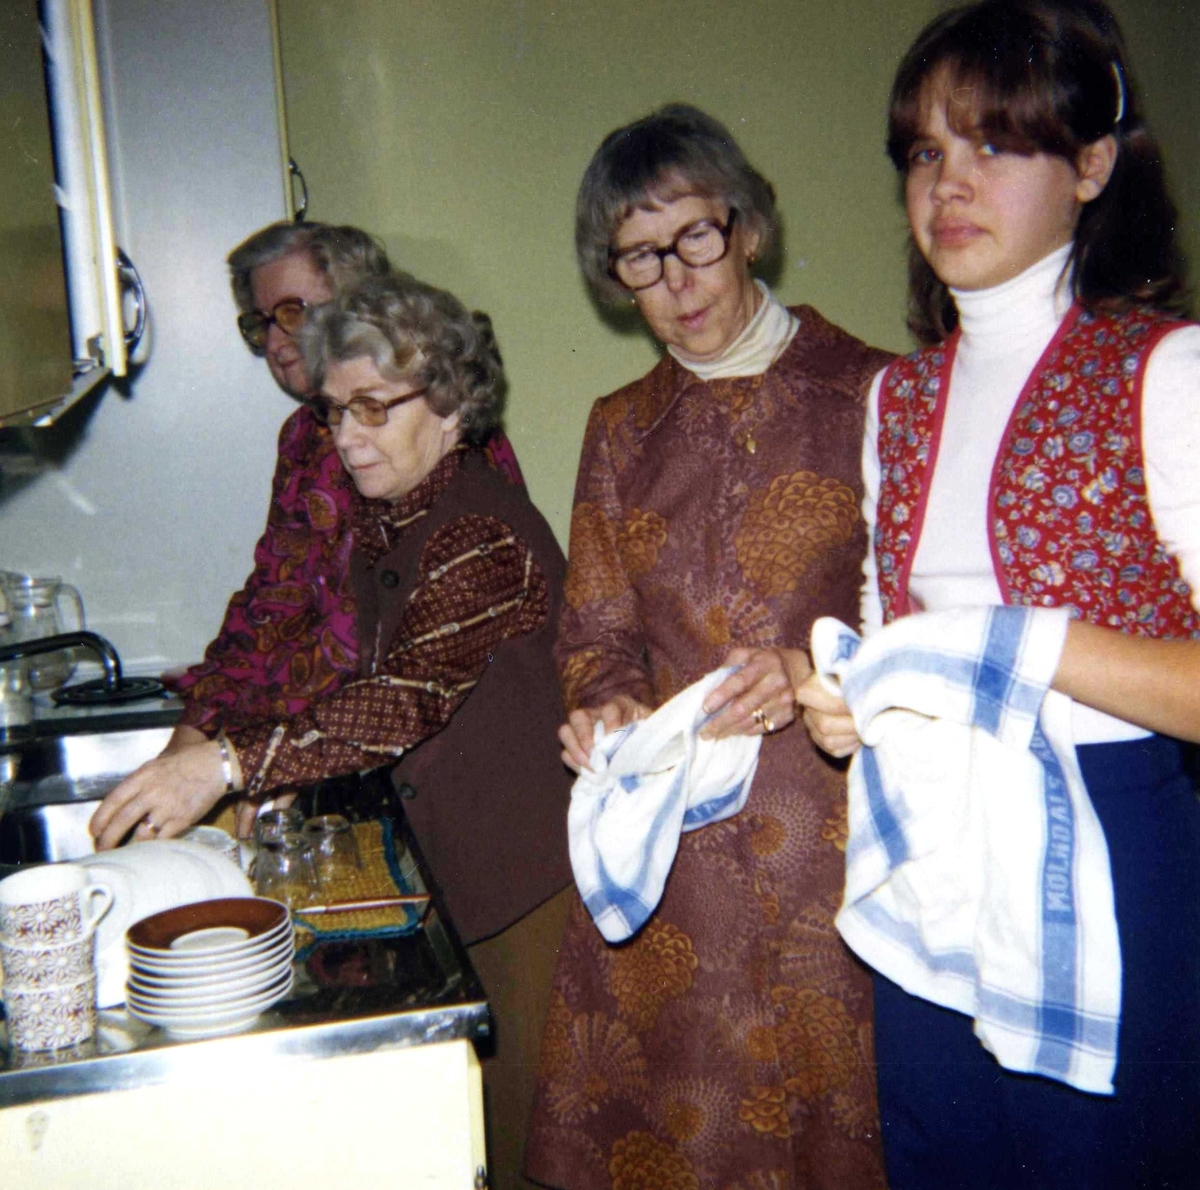 Fyra kvinnor hjälps åt med disken i ett kök (plats okänd) efter Socialdemokraterna i Kållereds möte, okänt årtal. Från vänster: Berta Mattsson, okänd, Elin Johansson samt okänd.